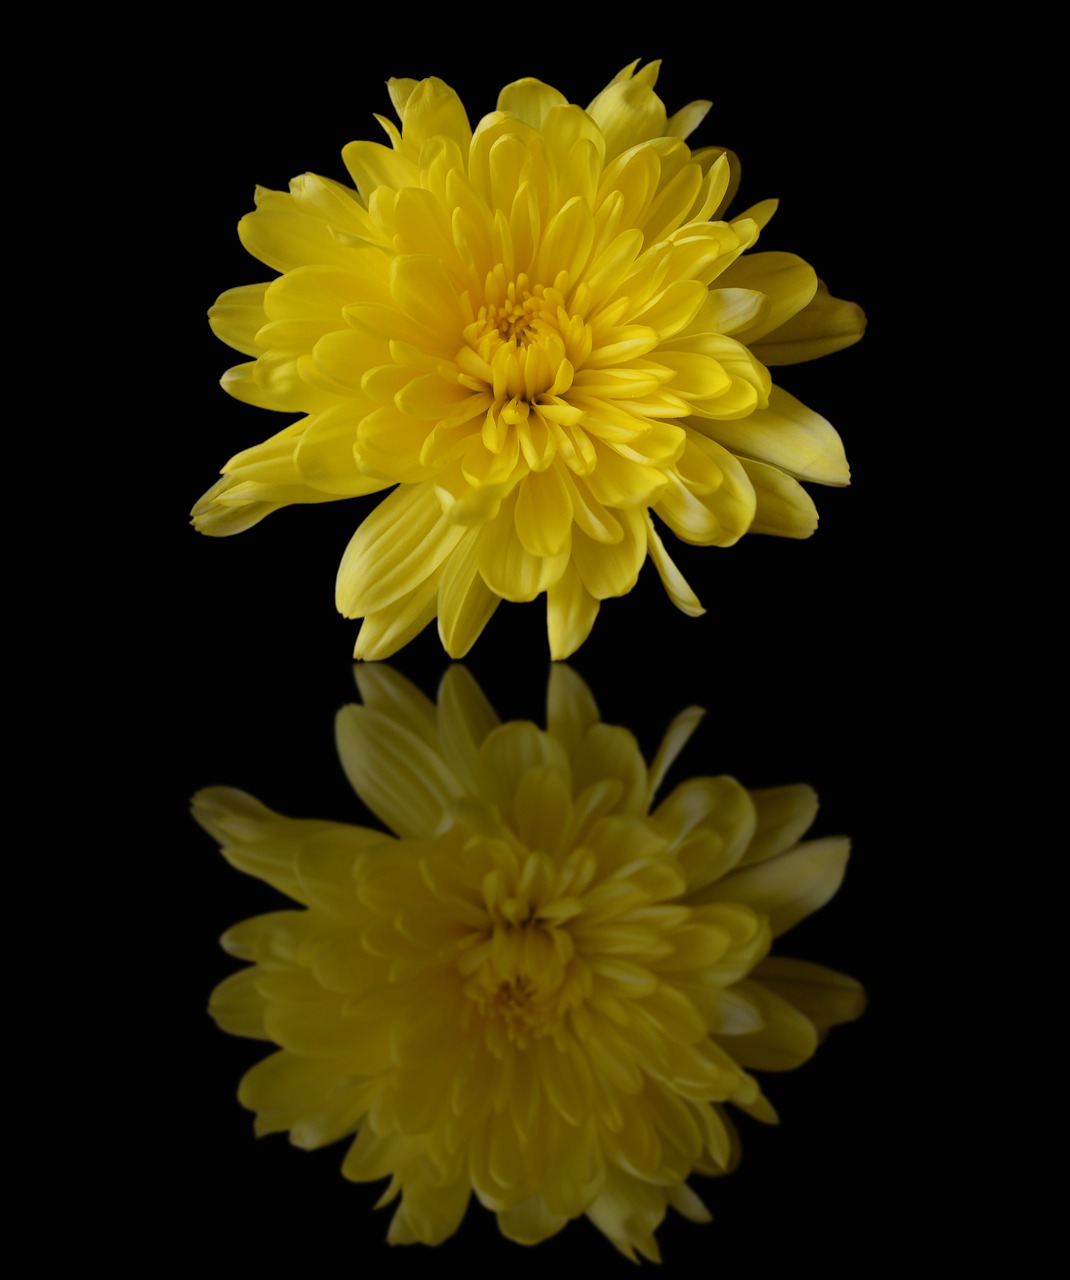 chrysanthemum yellow mirror free photo